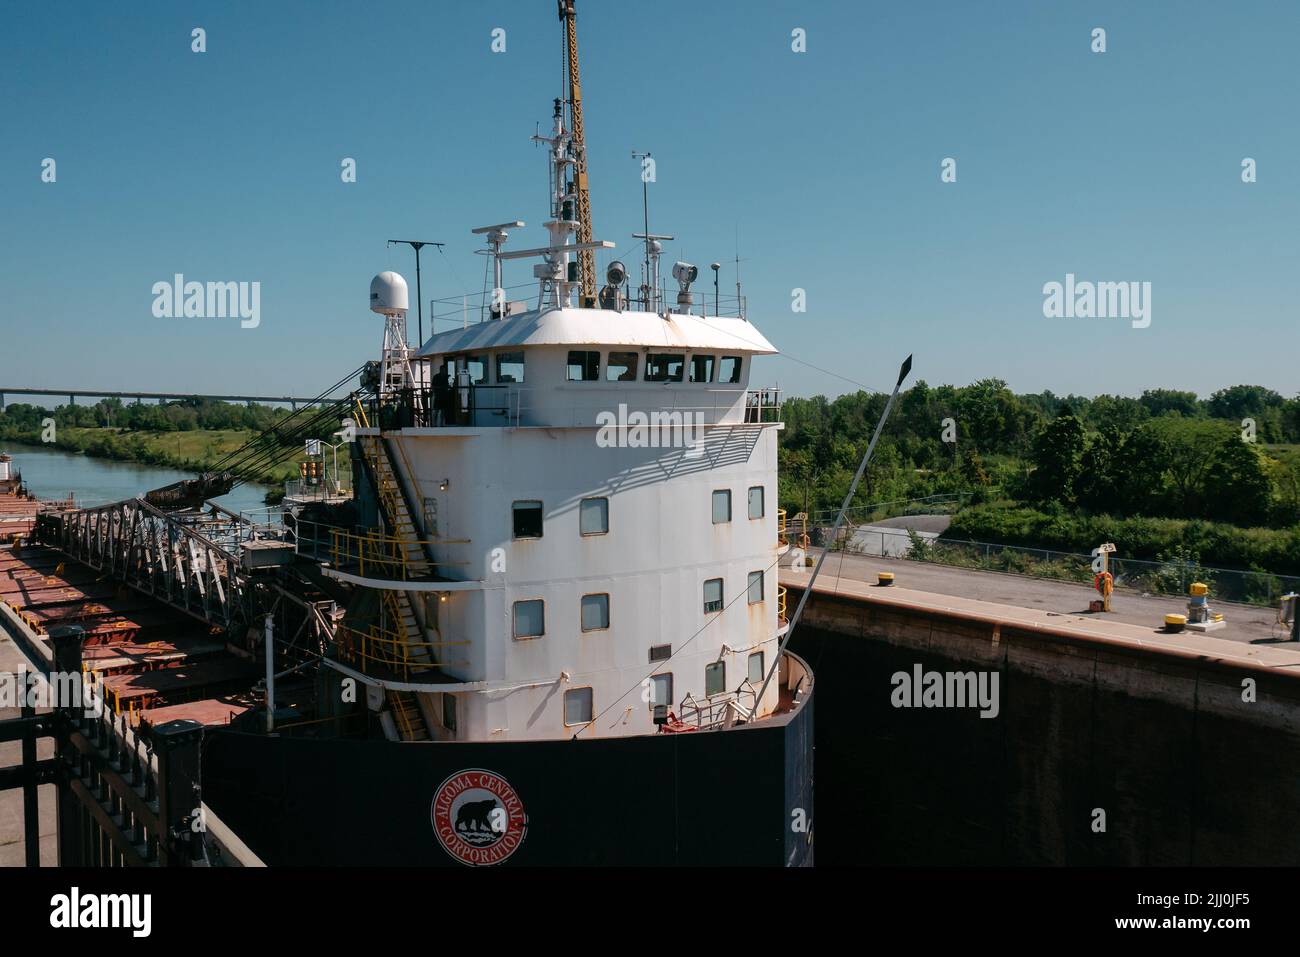 Frachtschiff, das in eine Schleuse im welland-Kanal eindringt Stockfoto